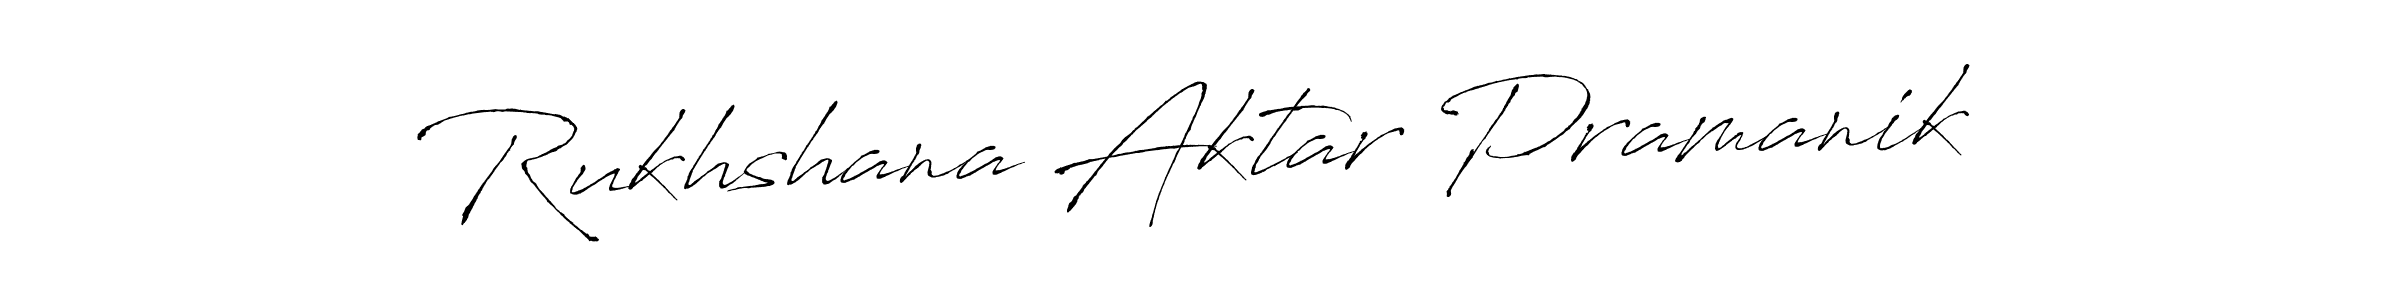 Rukhshana Aktar Pramanik stylish signature style. Best Handwritten Sign (Antro_Vectra) for my name. Handwritten Signature Collection Ideas for my name Rukhshana Aktar Pramanik. Rukhshana Aktar Pramanik signature style 6 images and pictures png